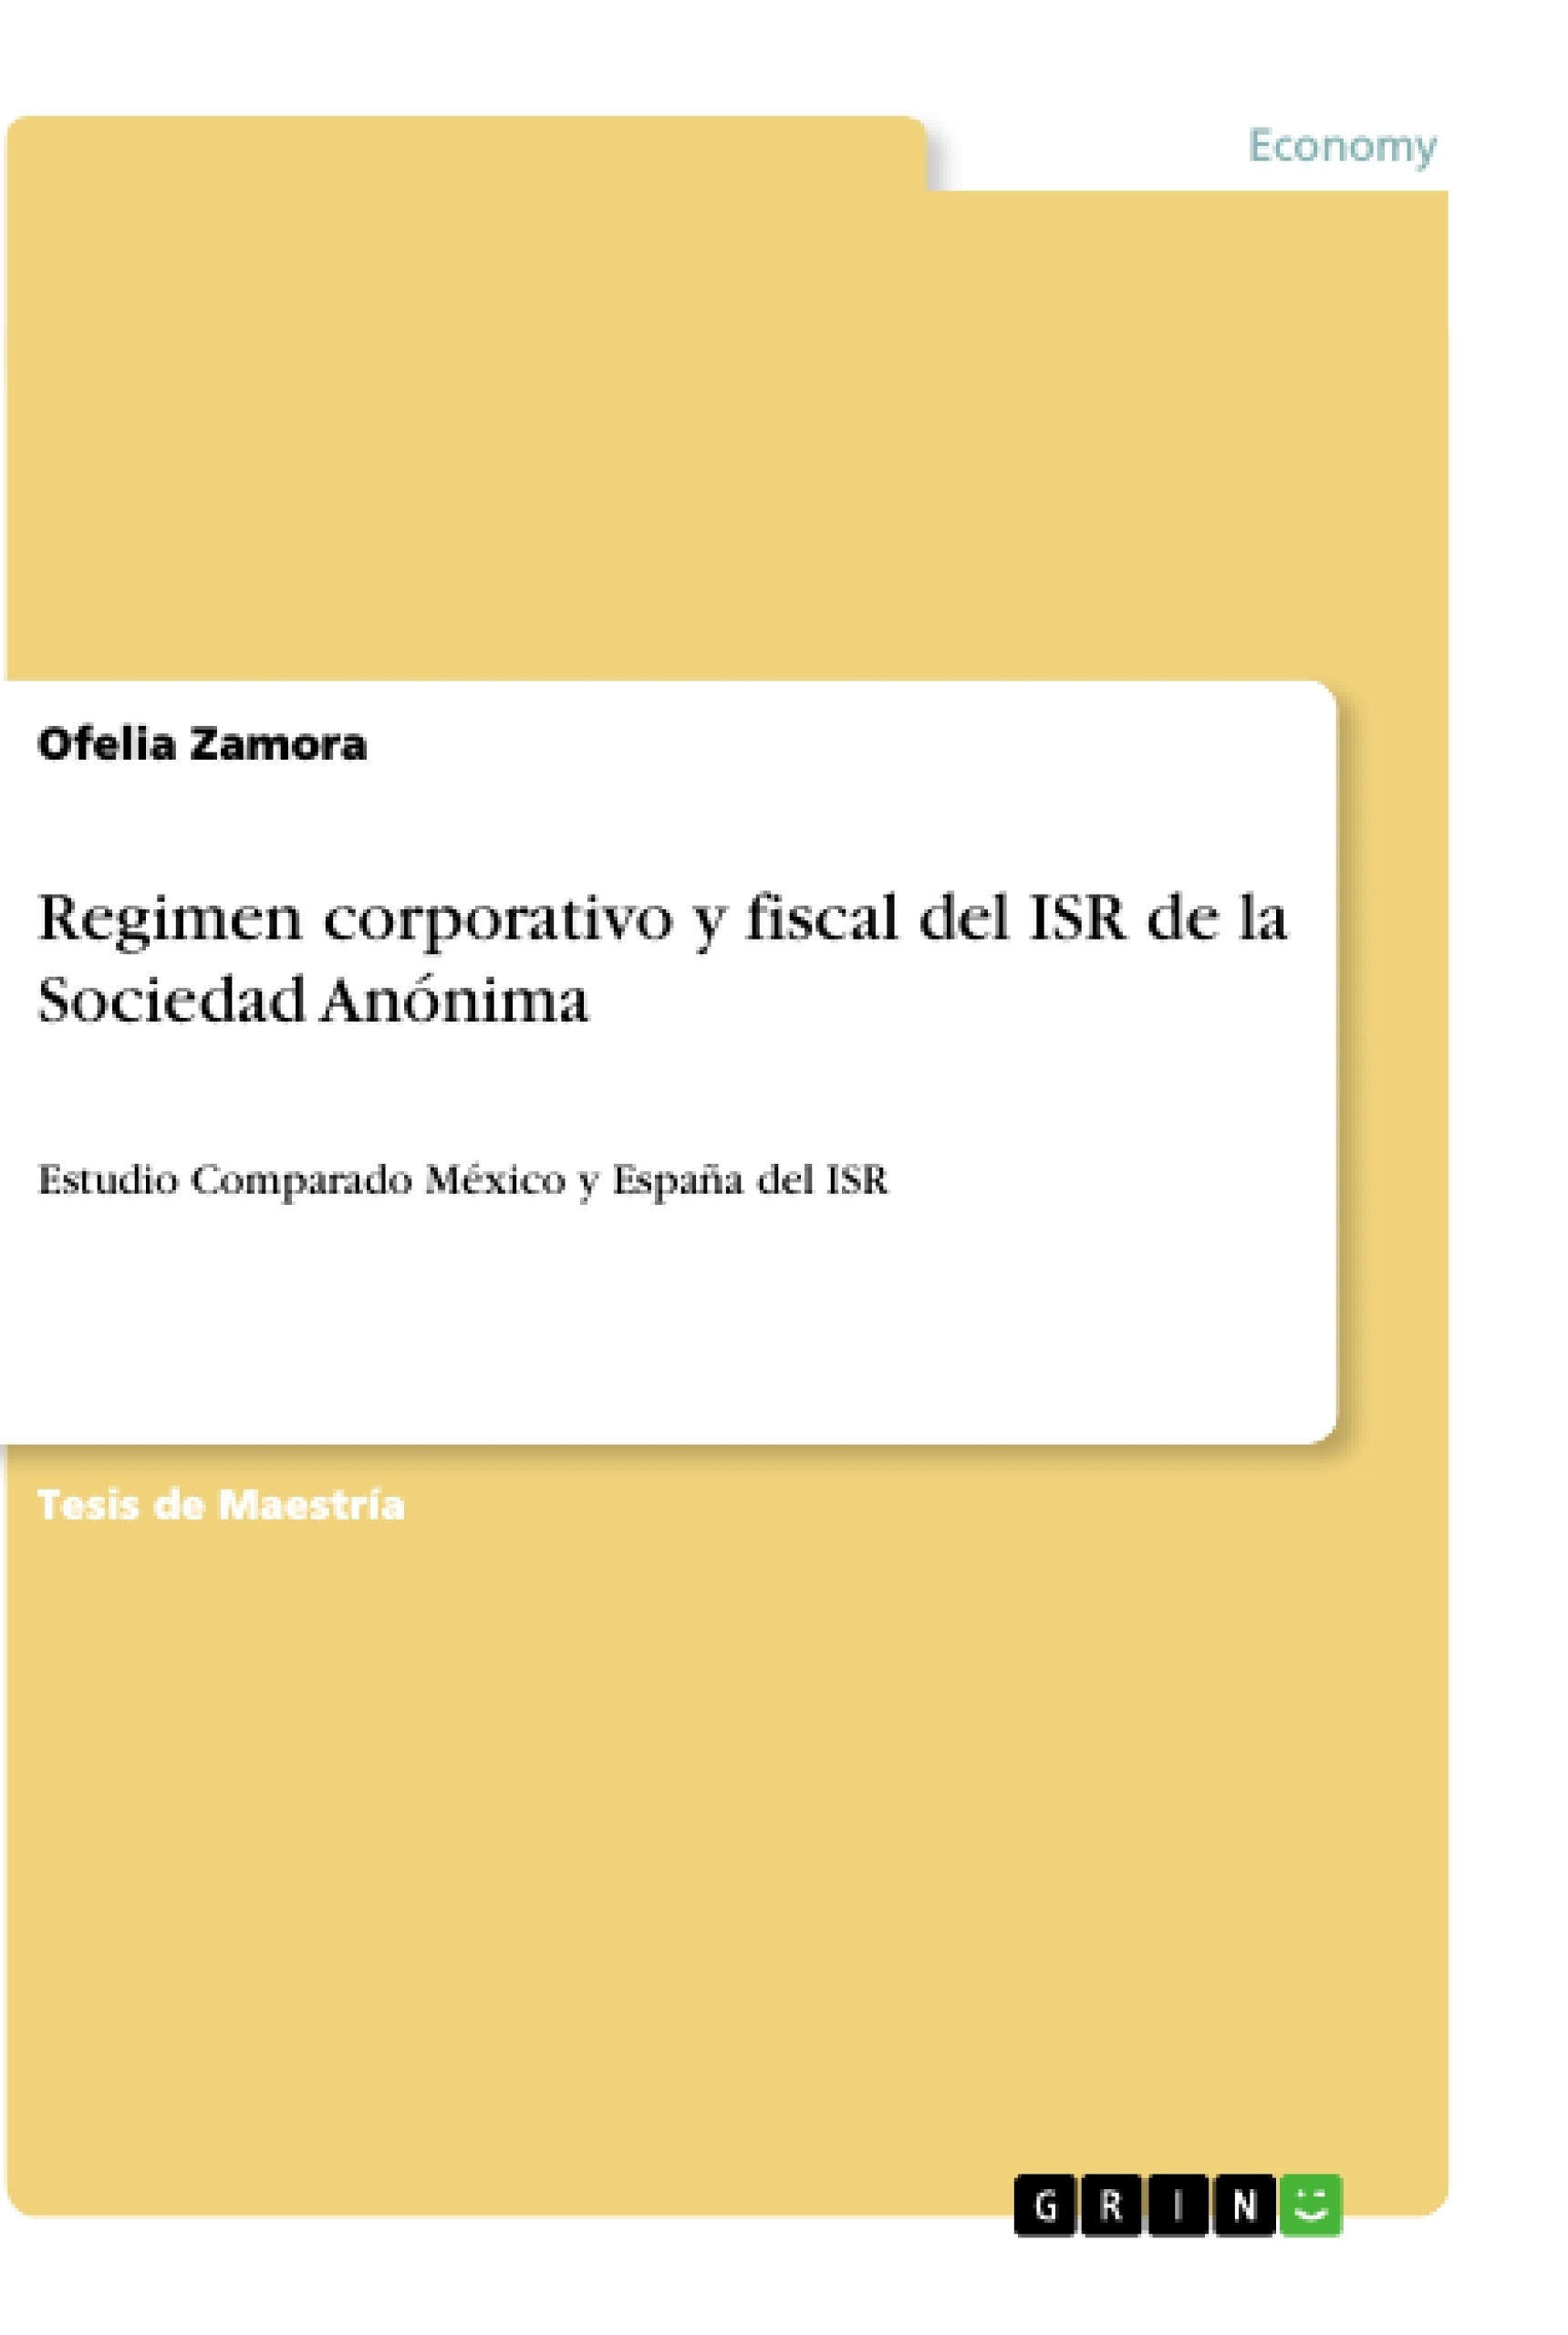 Titel: Regimen corporativo y fiscal del ISR de la Sociedad Anónima